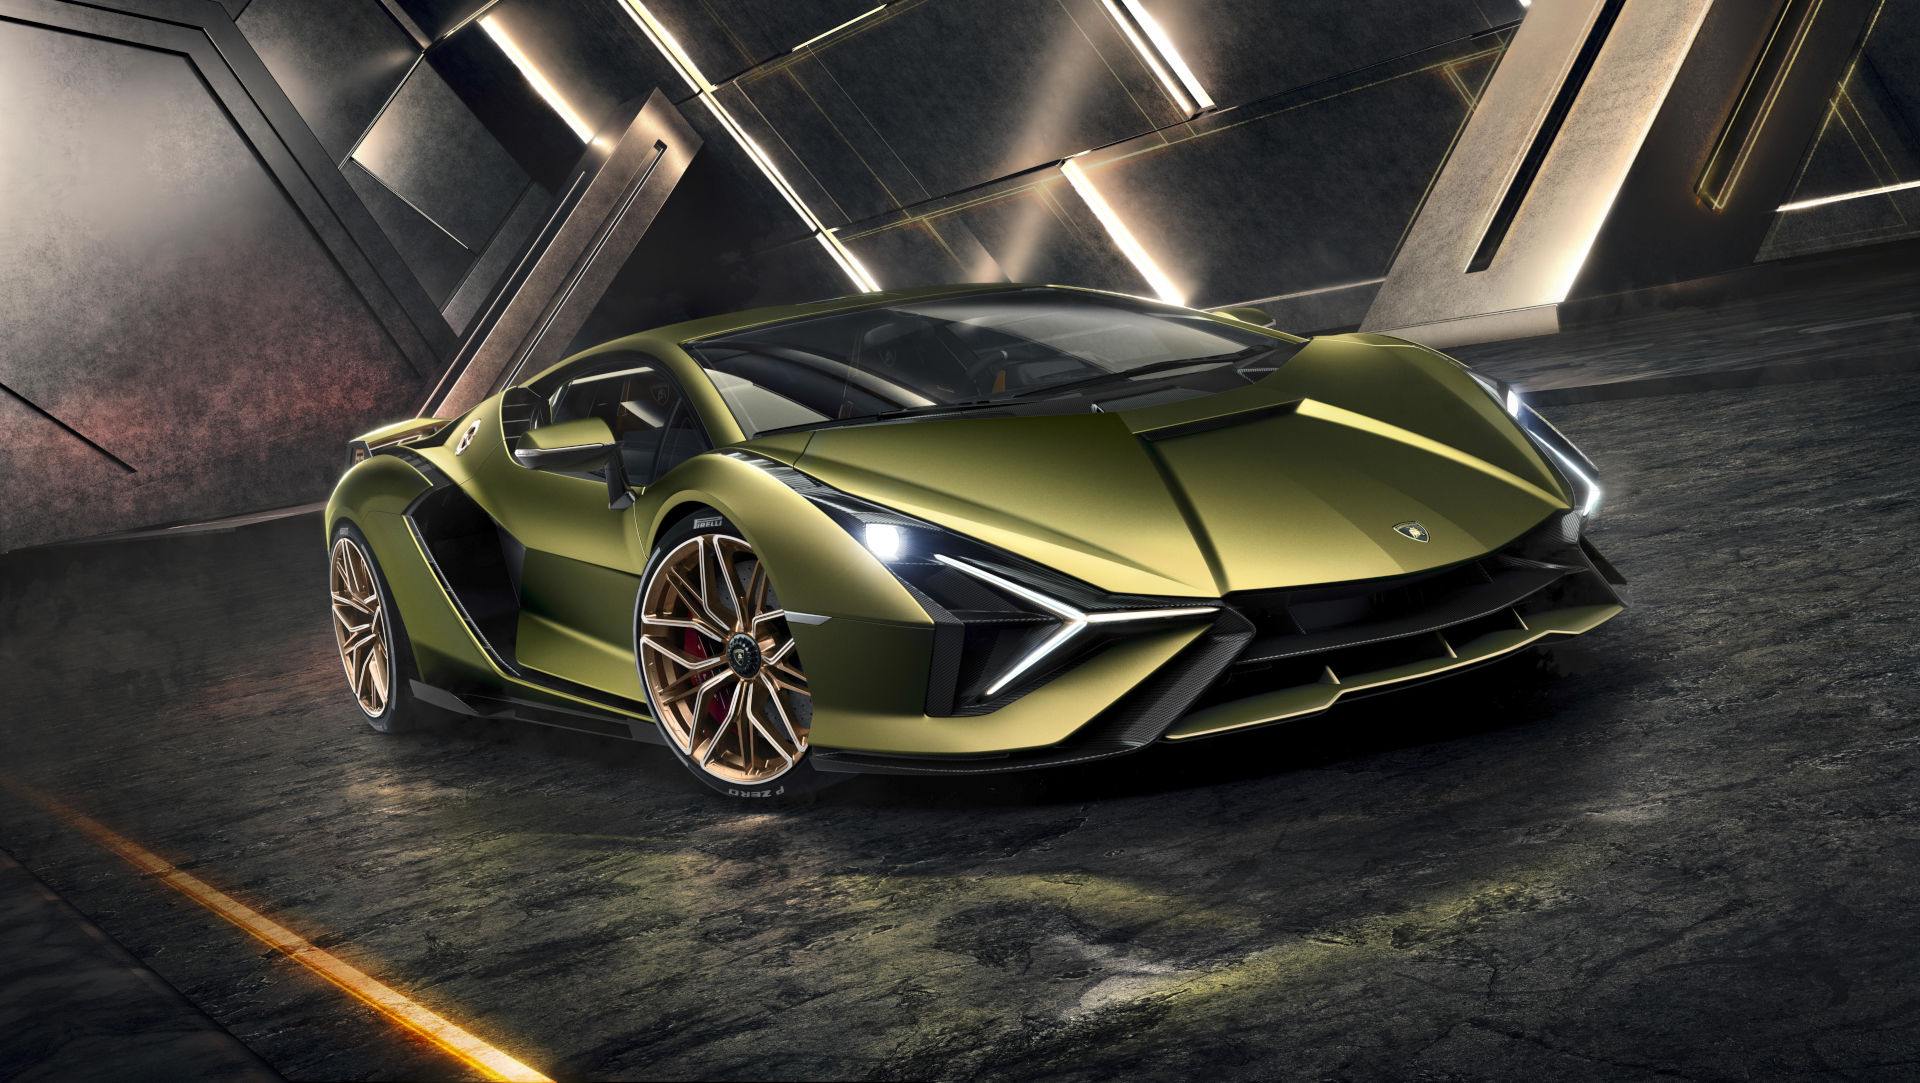 El nuevo Lamborghini Sián entra en la era híbrida con 819 CV